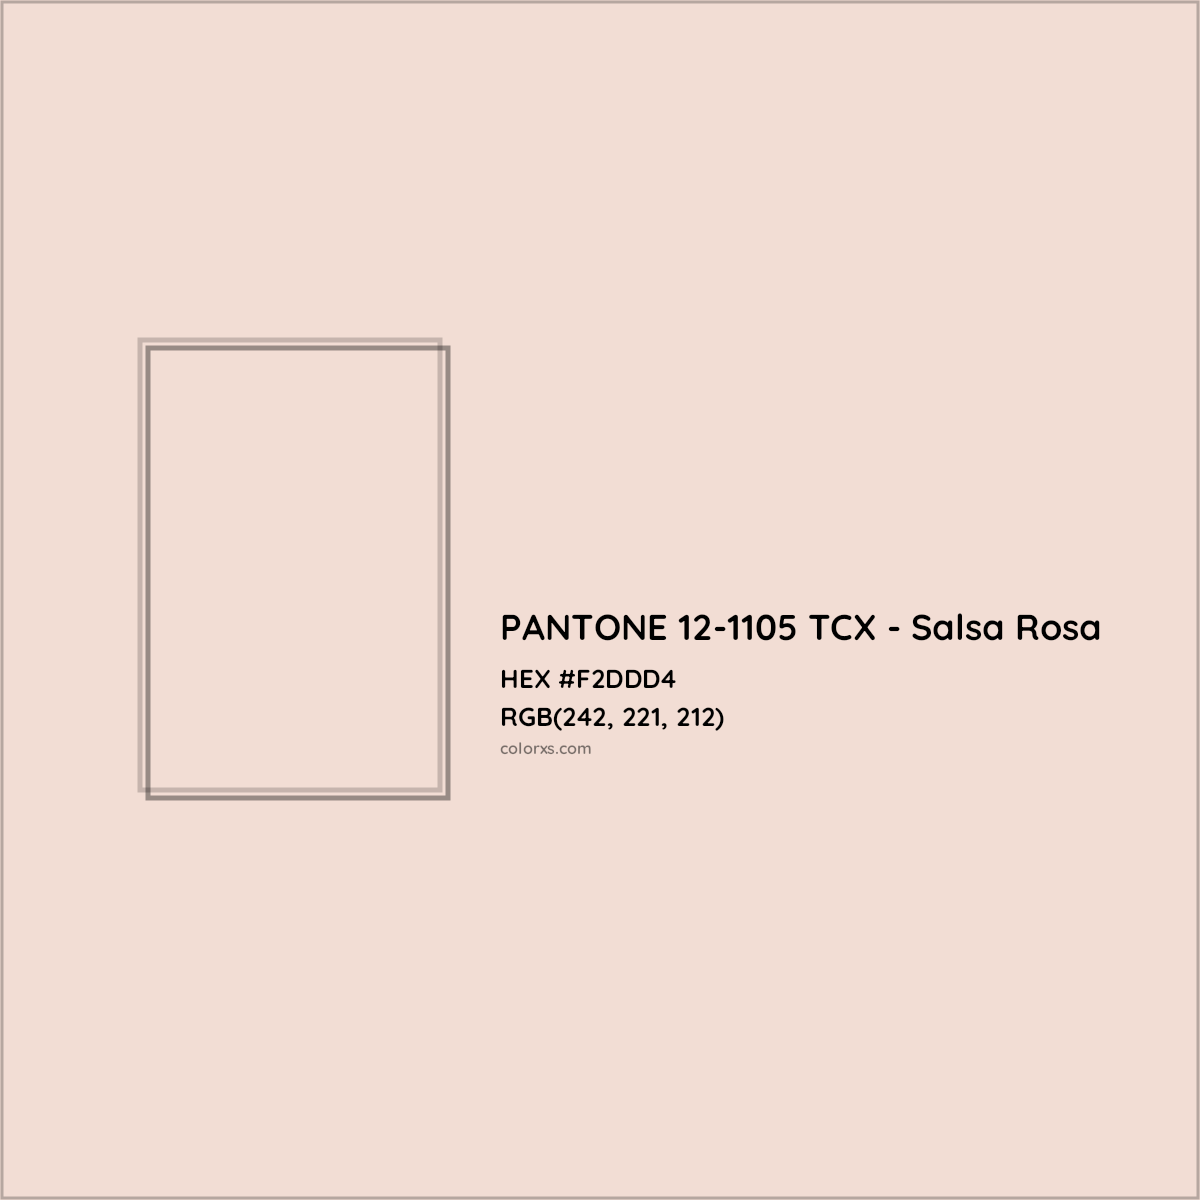 HEX #F2DDD4 PANTONE 12-1105 TCX - Salsa Rosa CMS Pantone TCX - Color Code